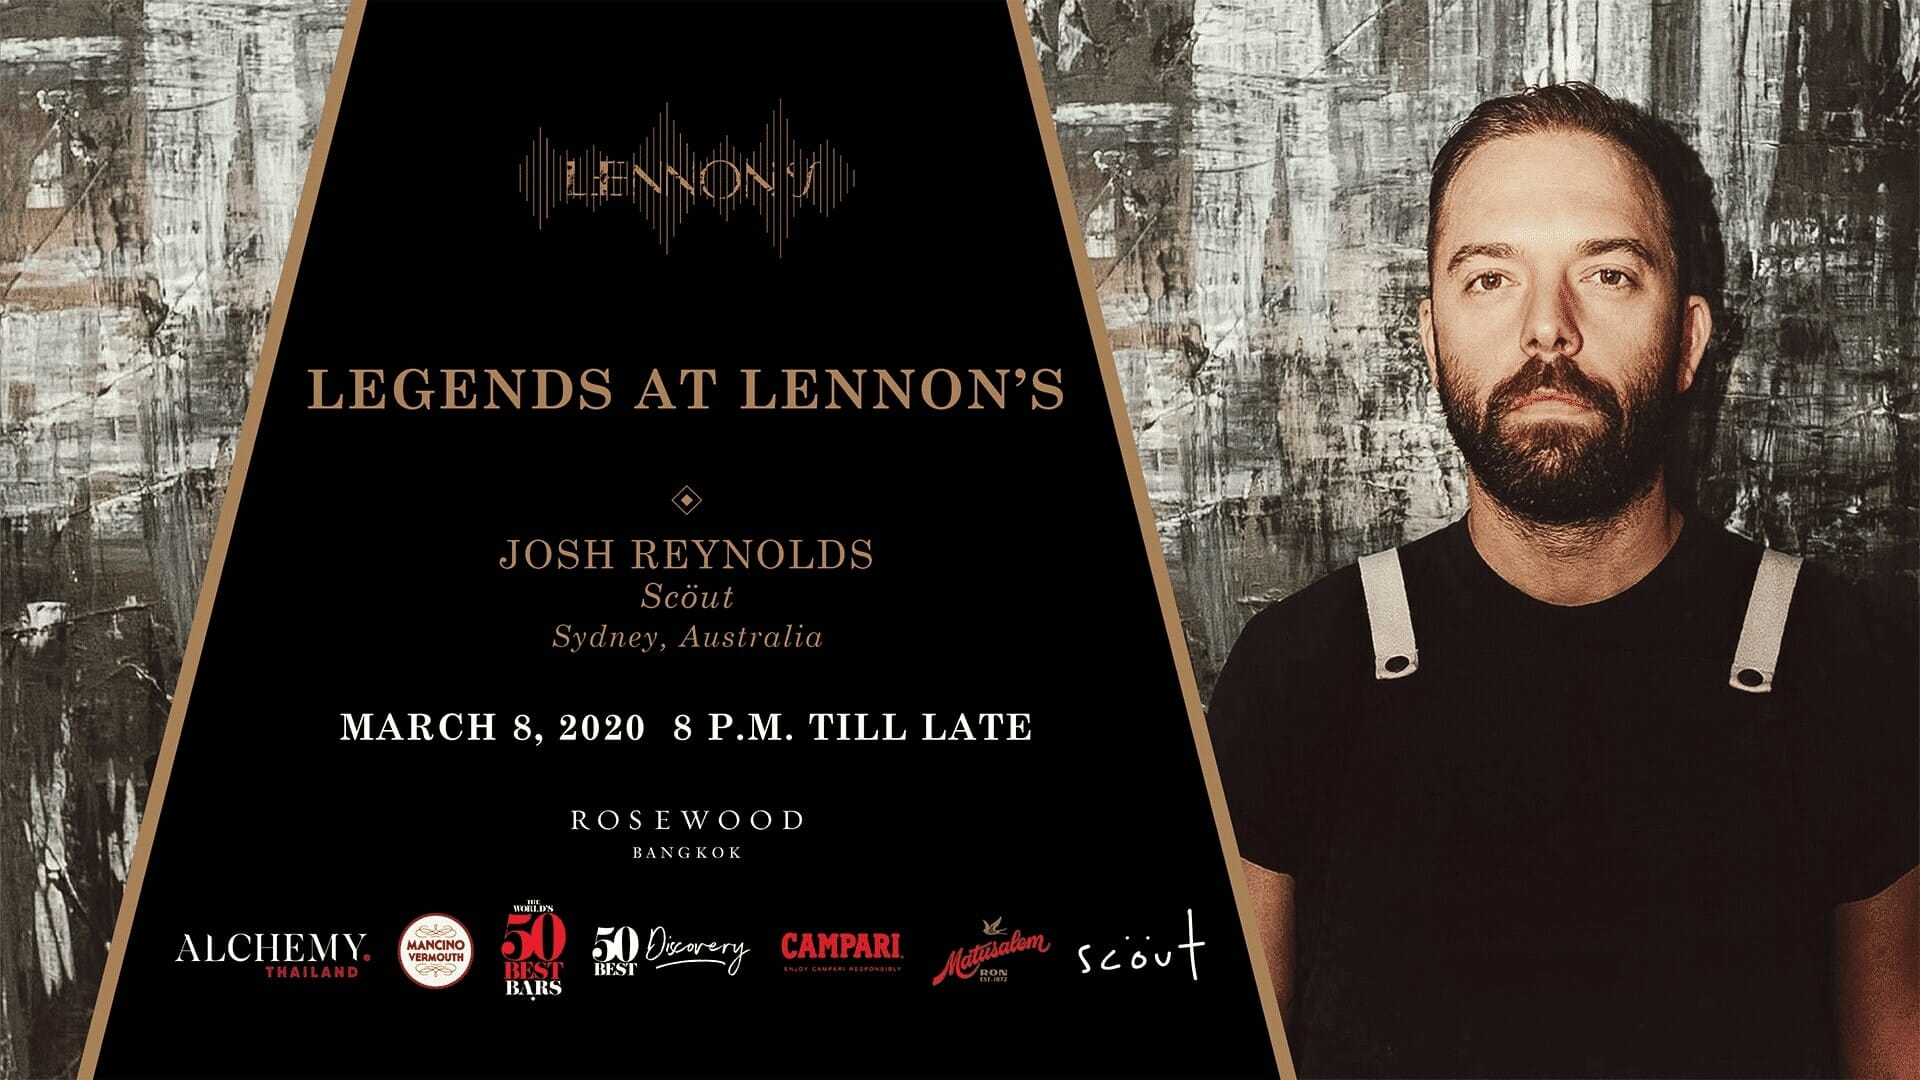 โรสวูด กรุงเทพฯ เปิดตัว “Legends at Lennon’s” ณ เลนนอนส์ 1